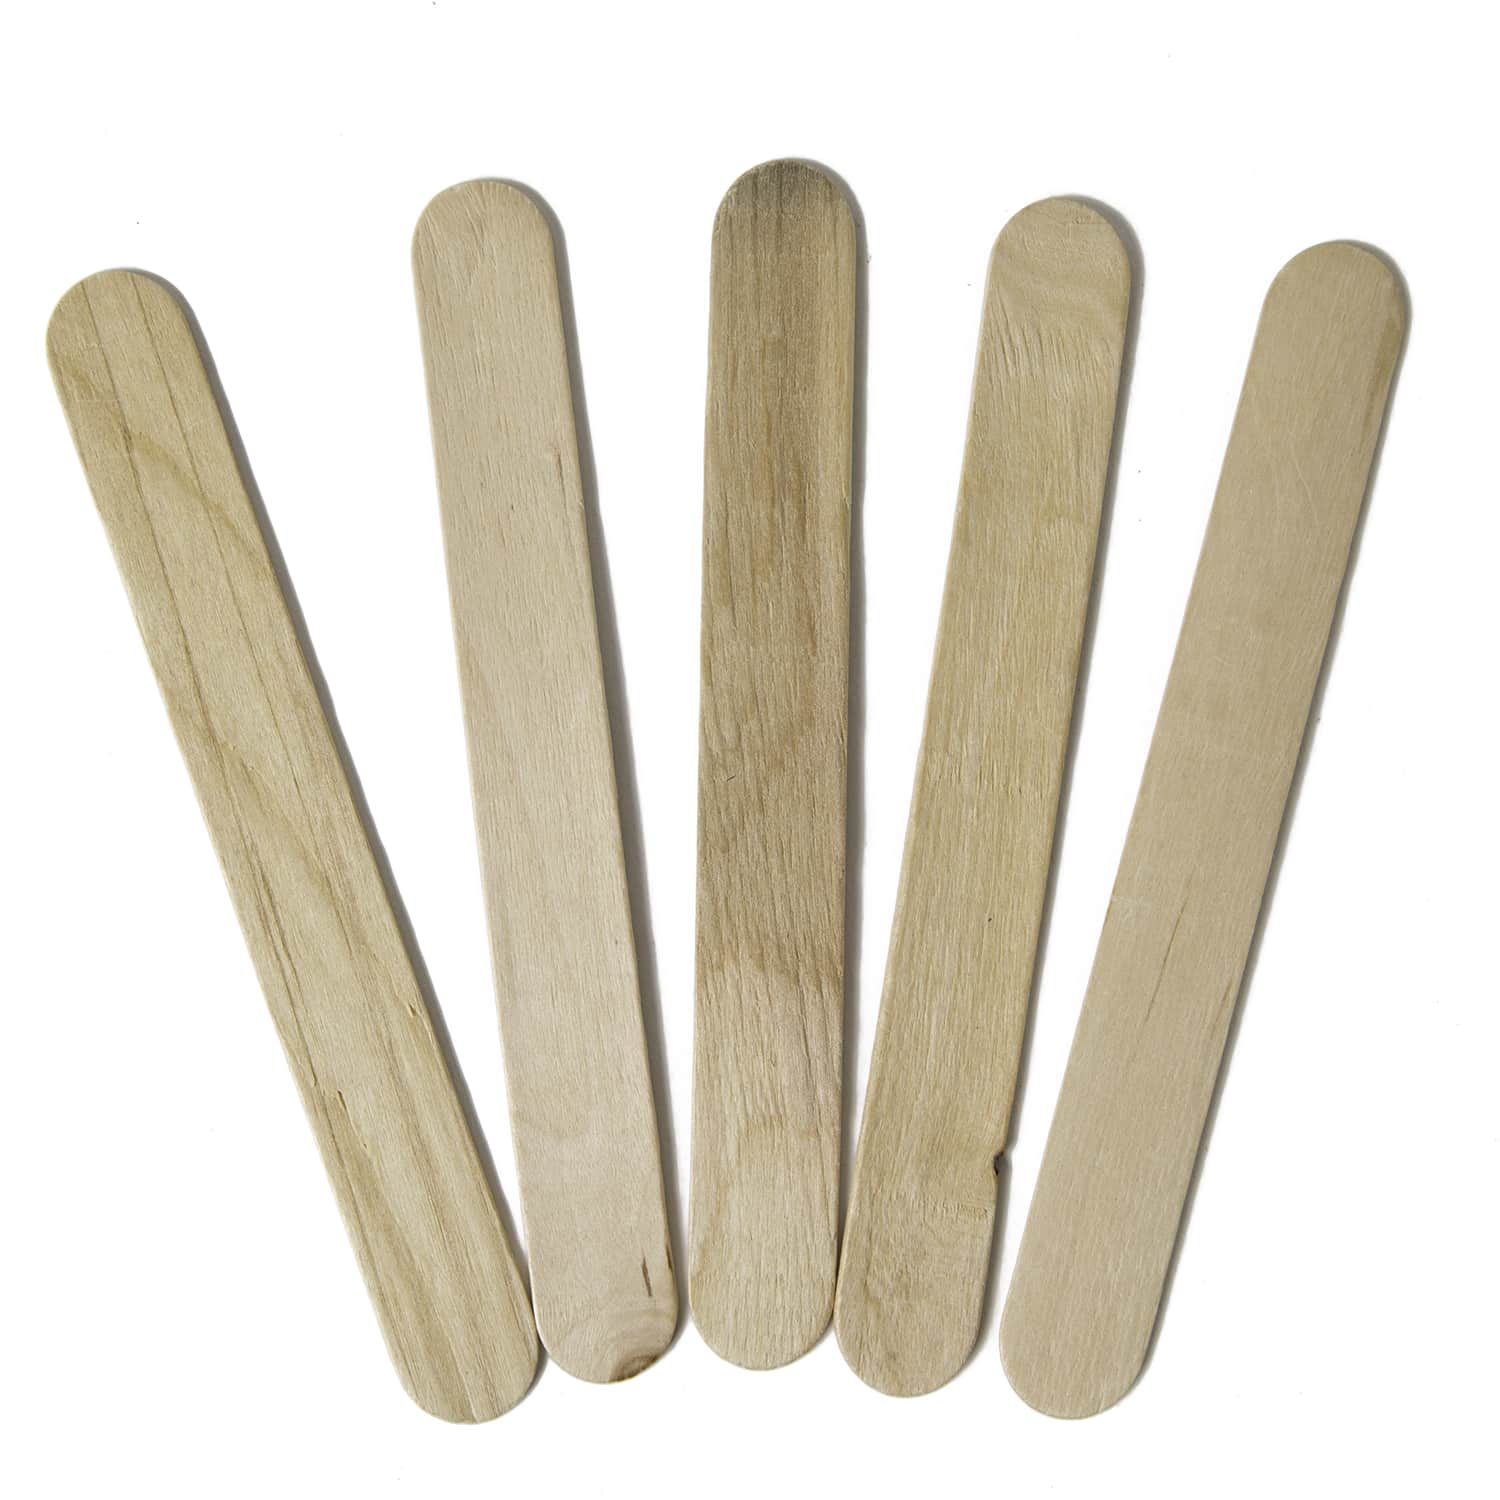 Extra Jumbo Craft Sticks-Natural 7.9 25/PKG